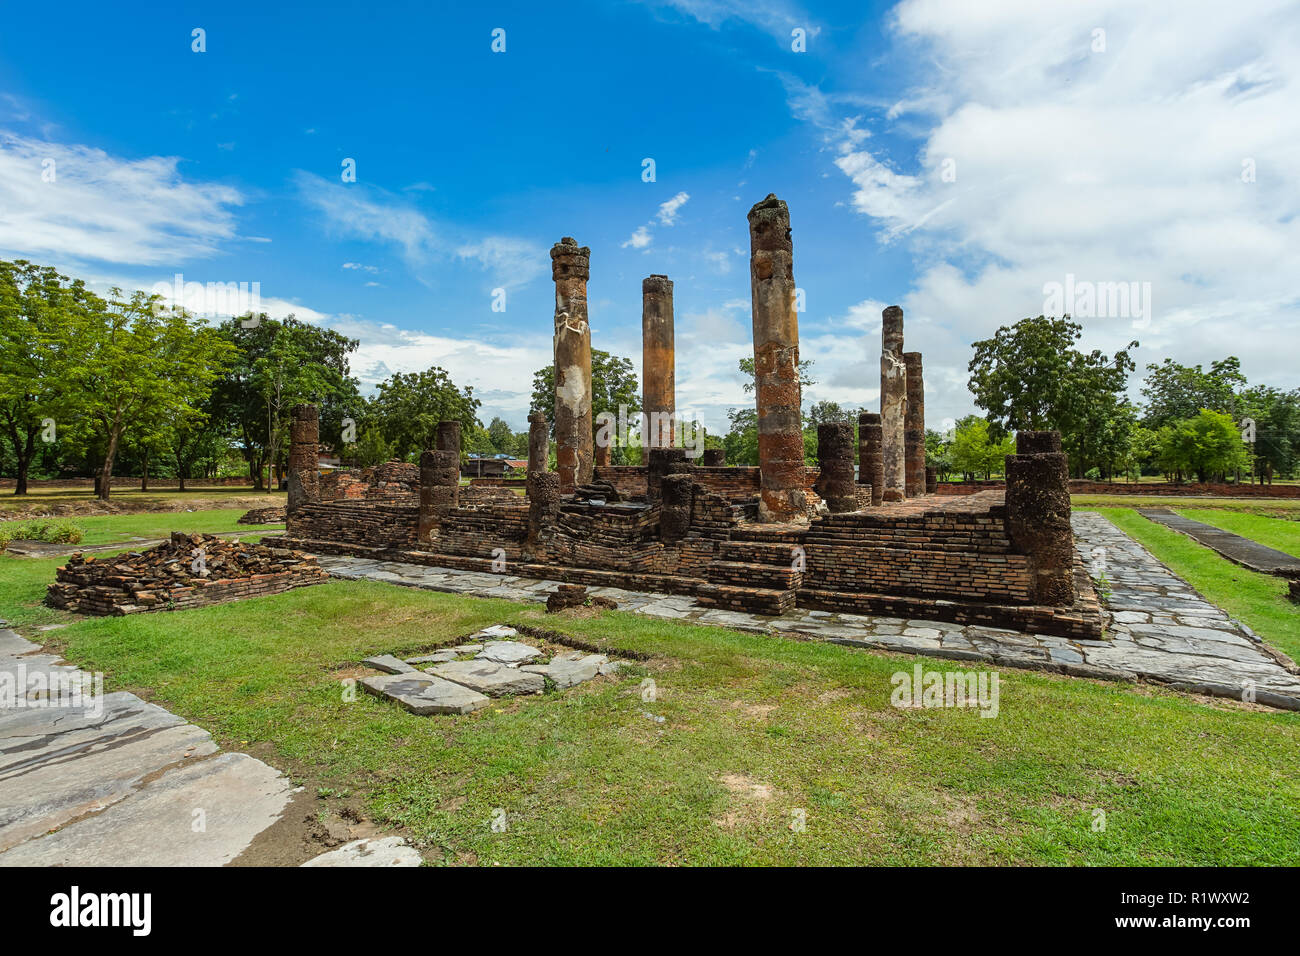 Site du patrimoine mondial de l'Wat Chetuphon dans le parc historique de Sukhothai, Thaïlande, province de Sukhothai. Banque D'Images